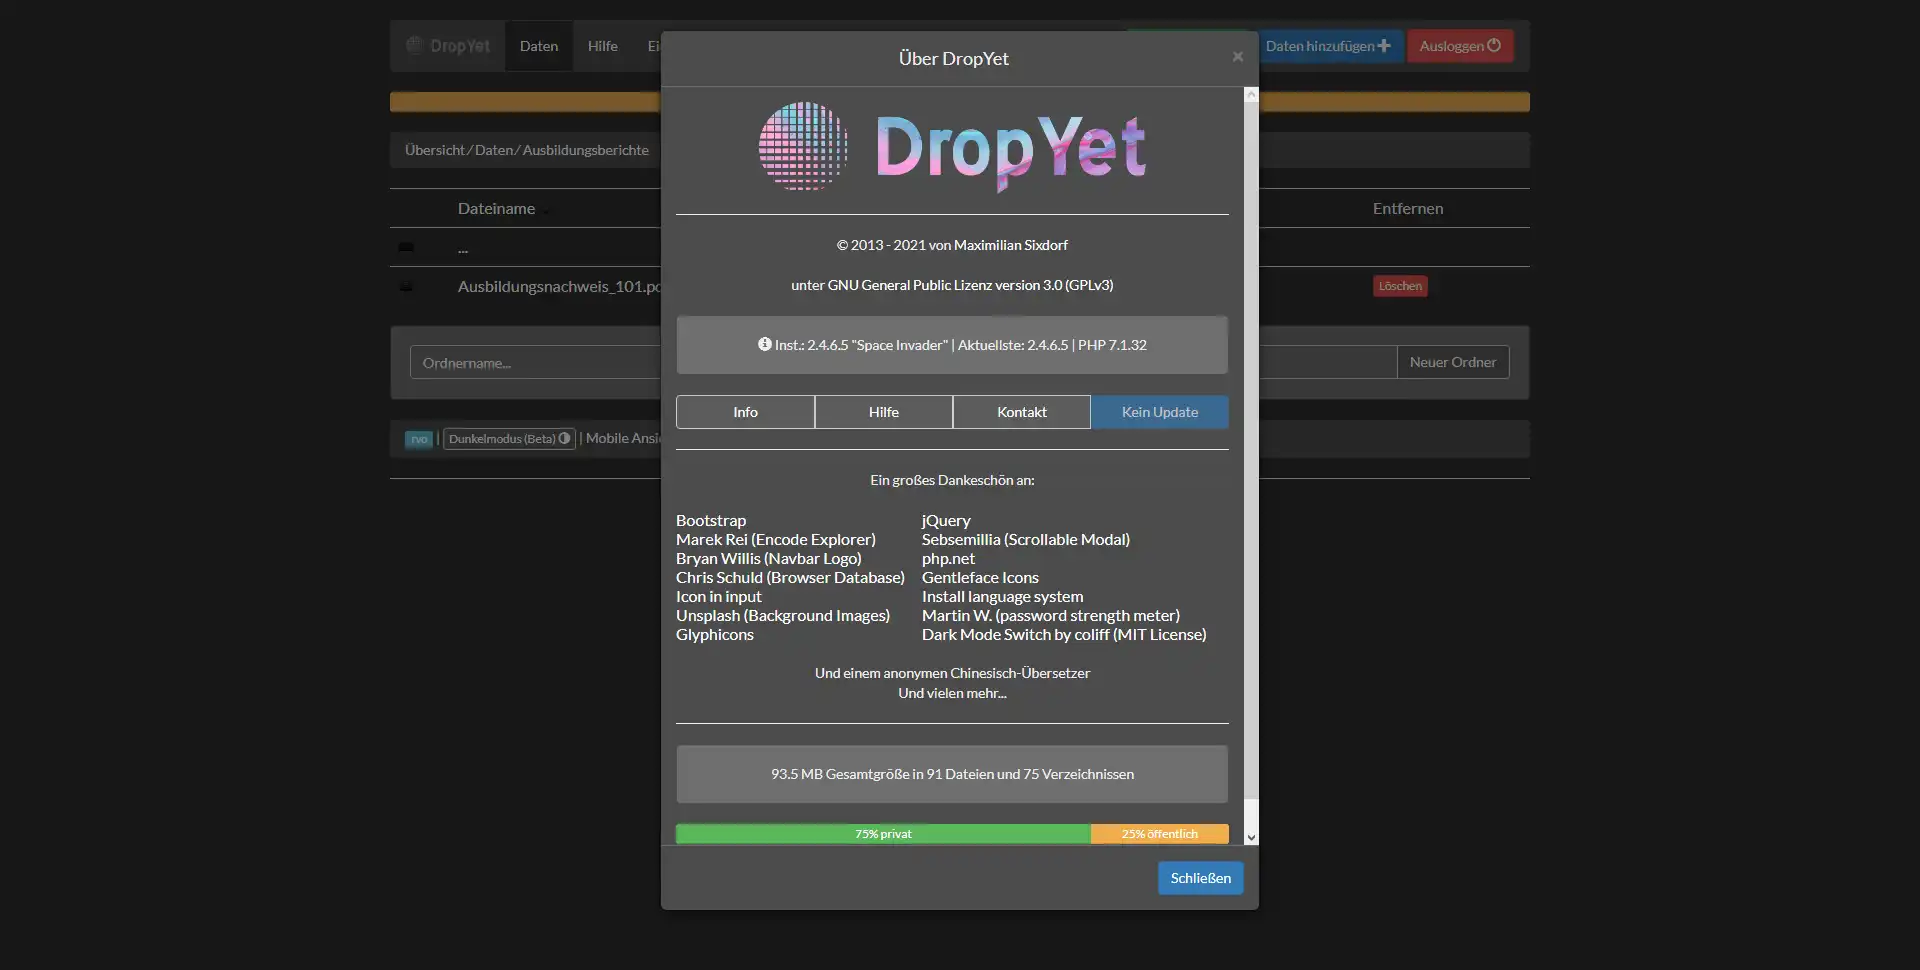 ابزار وب یا برنامه وب DropYet را دانلود کنید